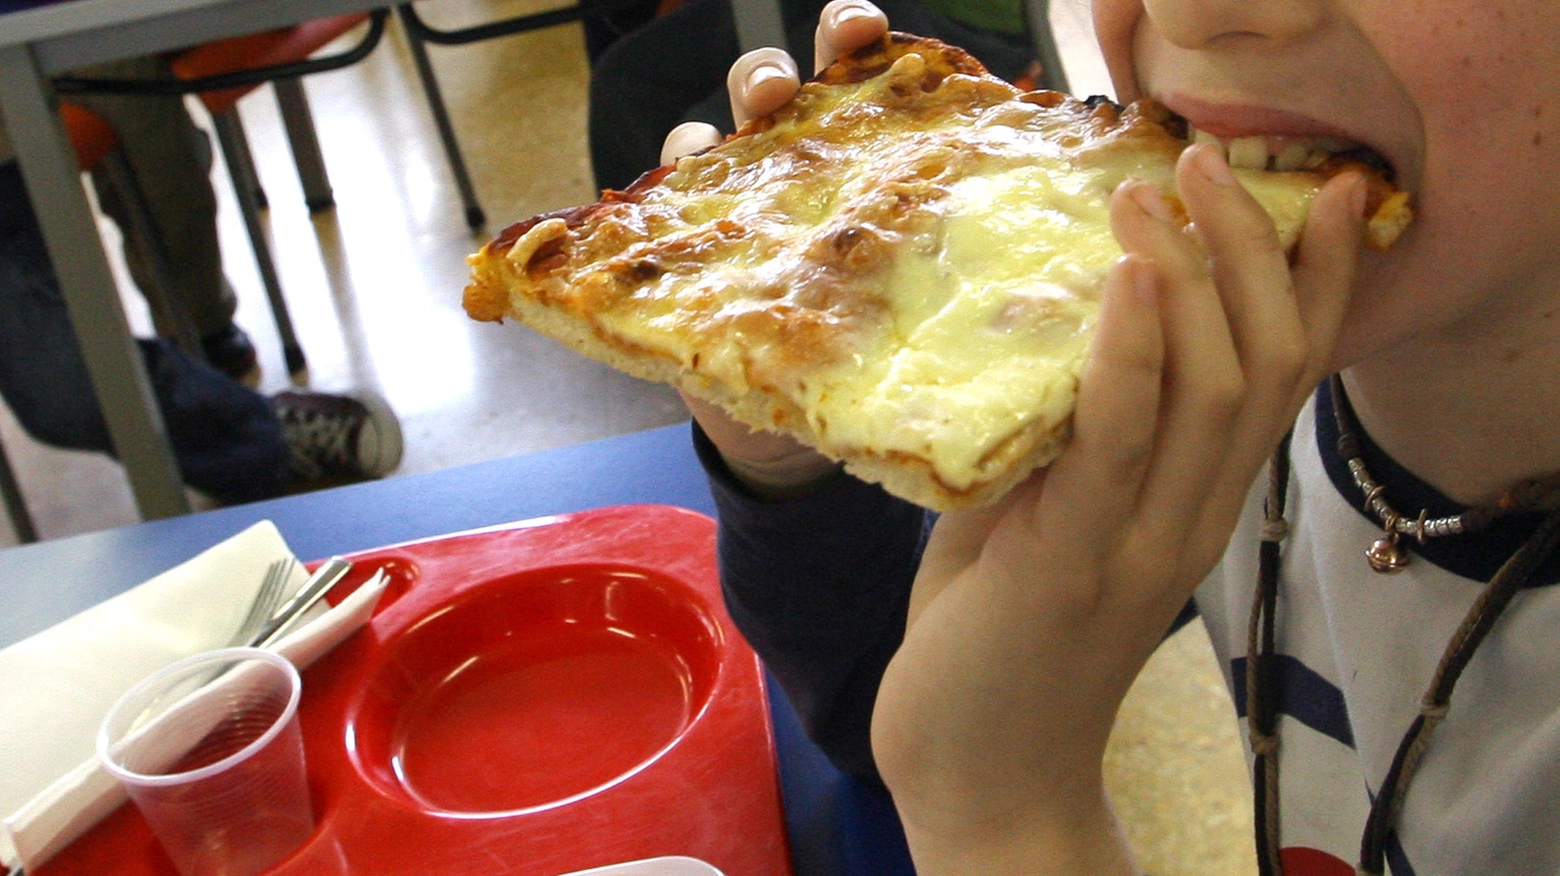 Trancio di pizza alla mensa della scuola